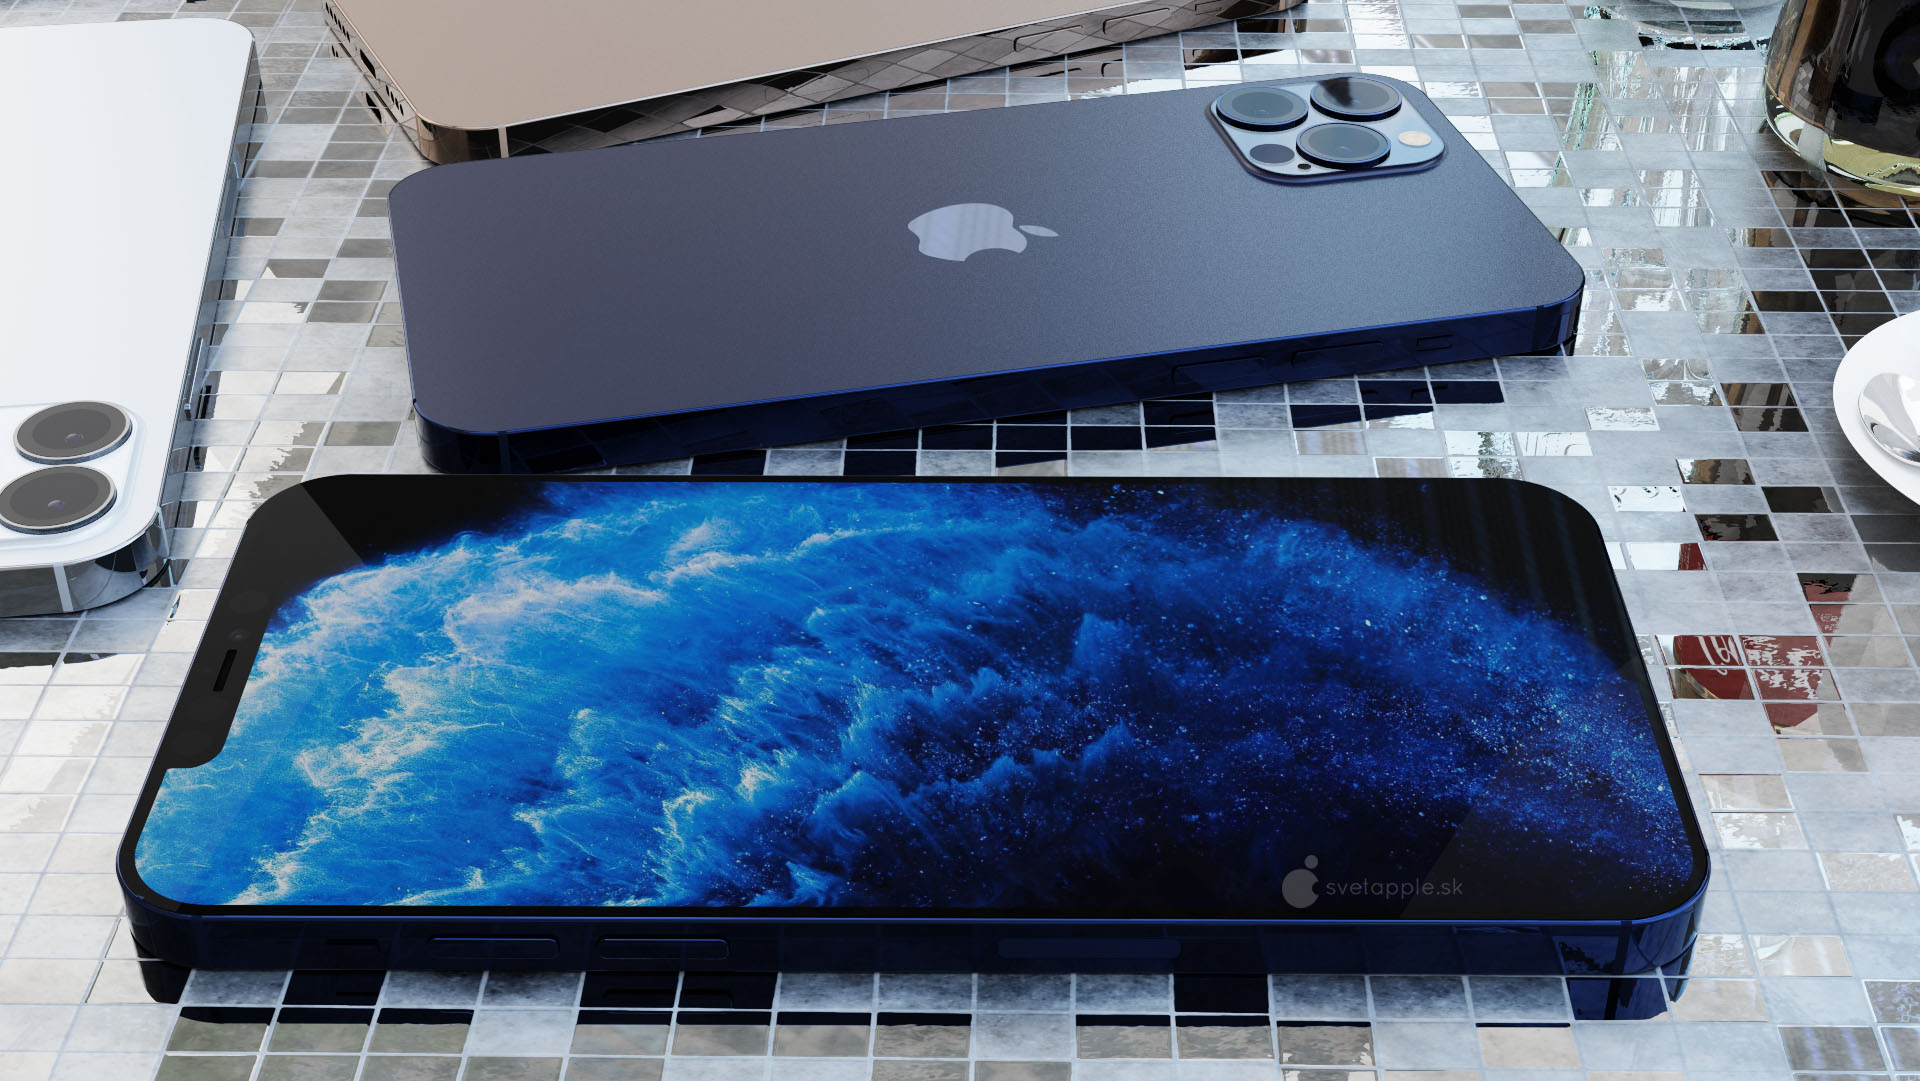 Apple iPhone 12 Pro rendery design kiedy premiera plotki przecieki wycieki